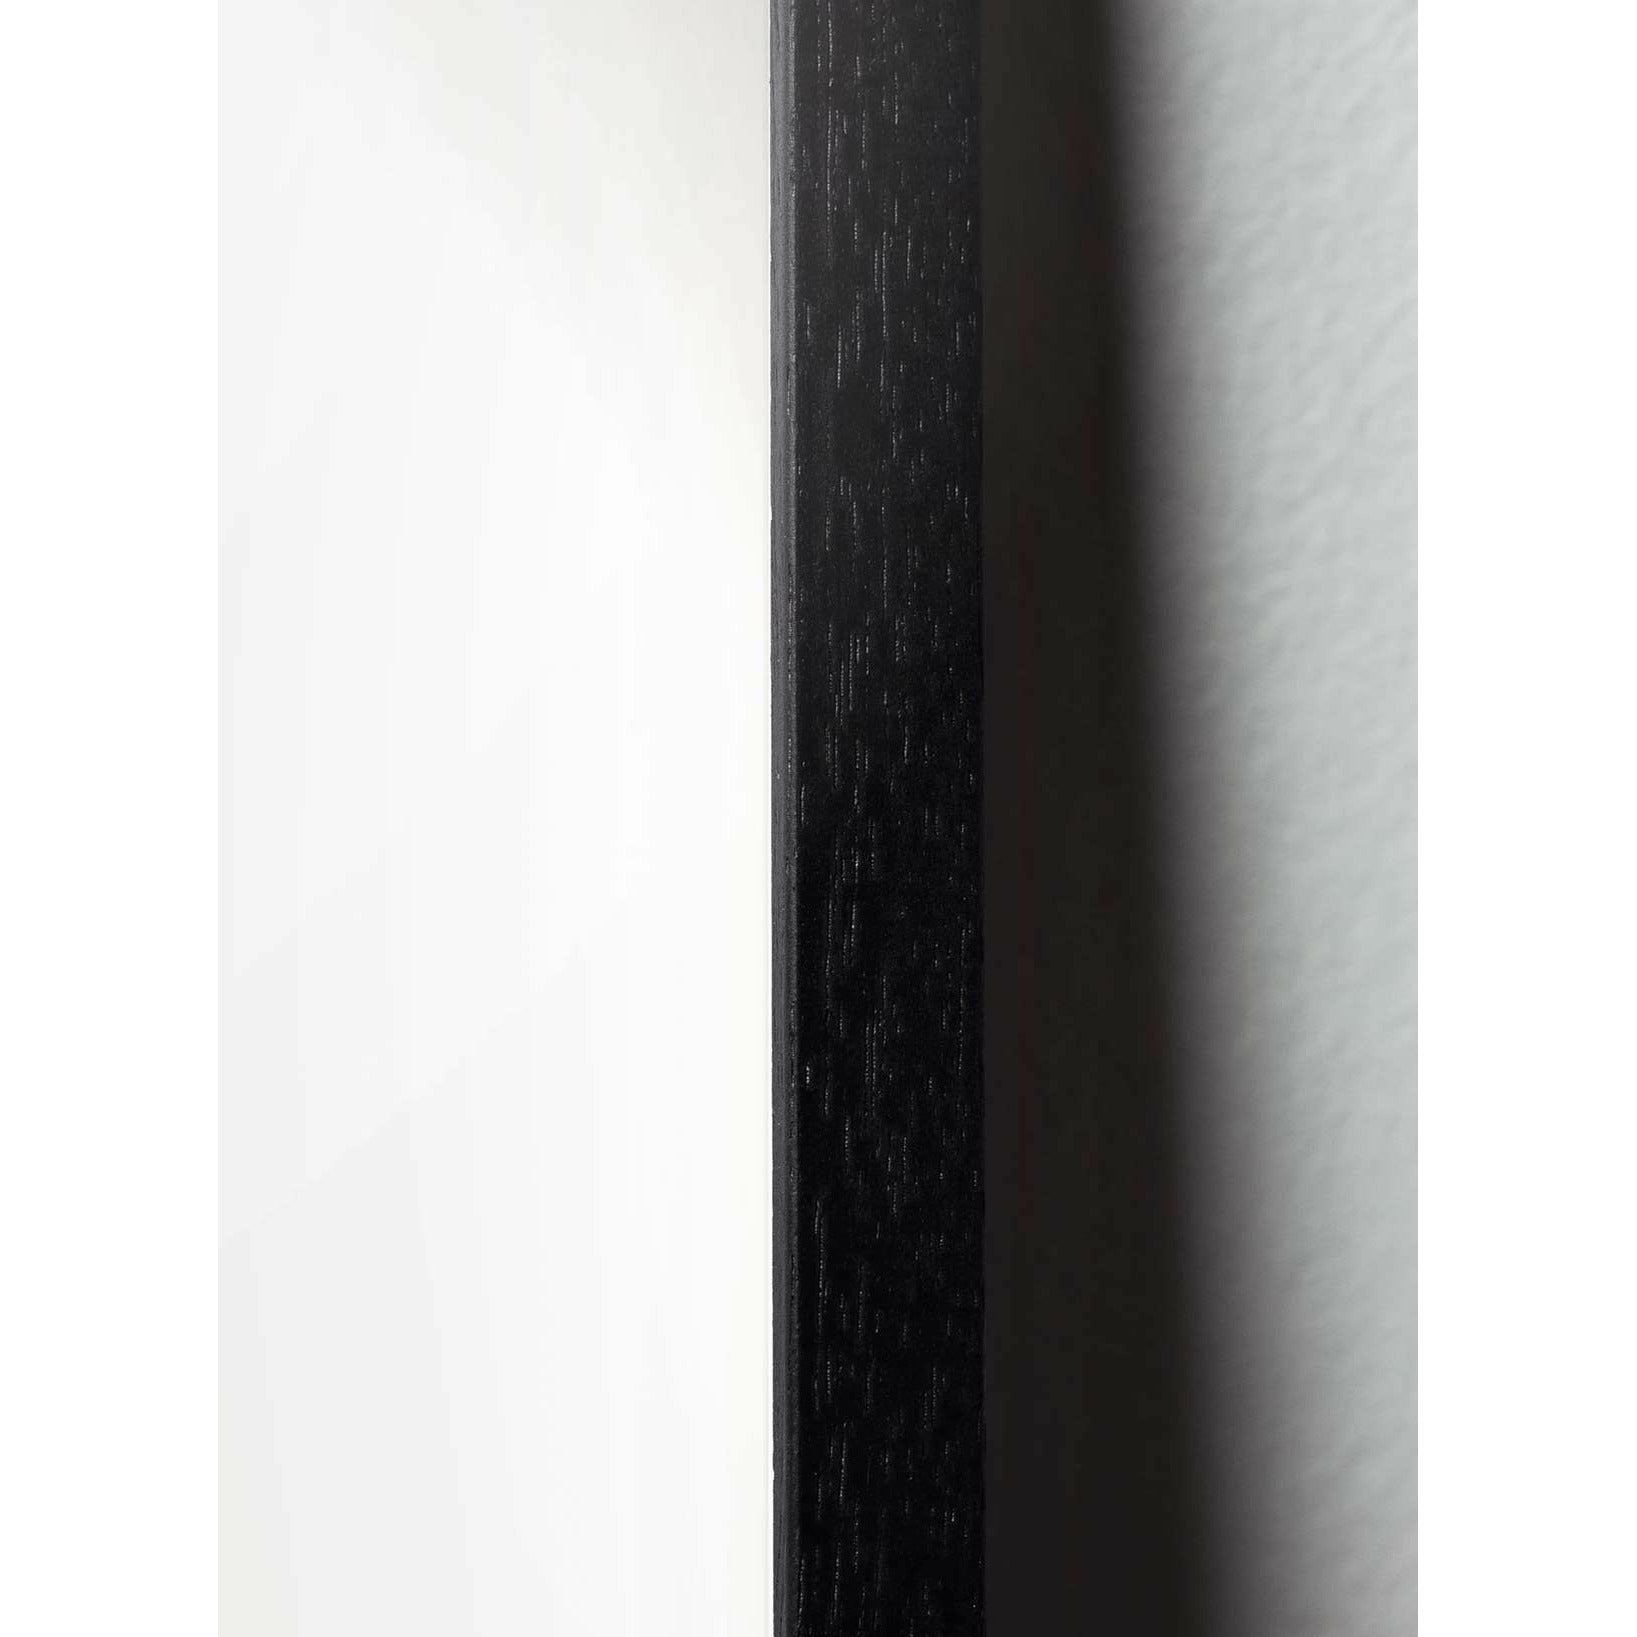 brainchild Blumenpot klassisches Poster, Rahmen im schwarzen lackierten Holz A5, schwarzer Hintergrund